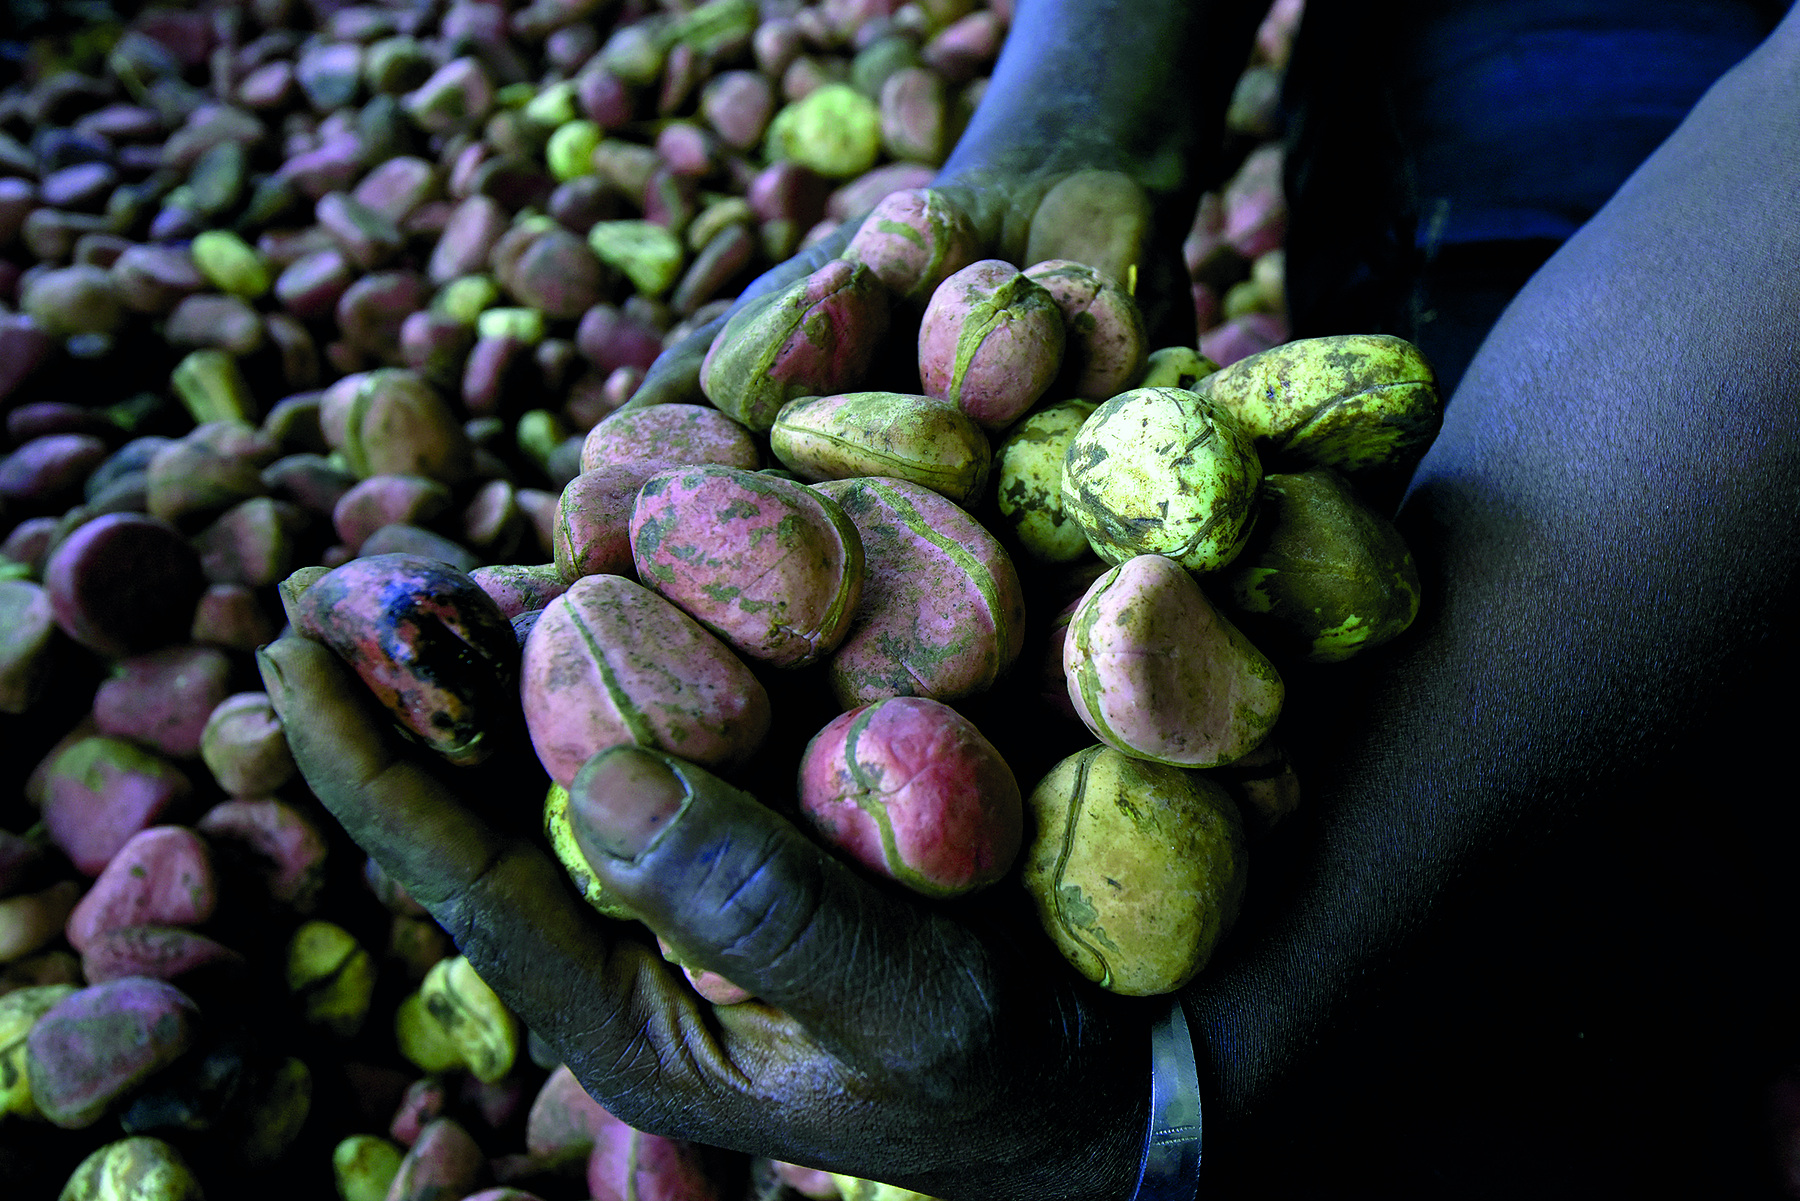 Fotografia. Imagem mostrando os braços de um trabalhador segurando nas mãos frutos de noz-de-cola em formato arredondado, alguns dos frutos são cor rosa e outros amarelo claro. Ao fundo, centenas de frutos no chão.